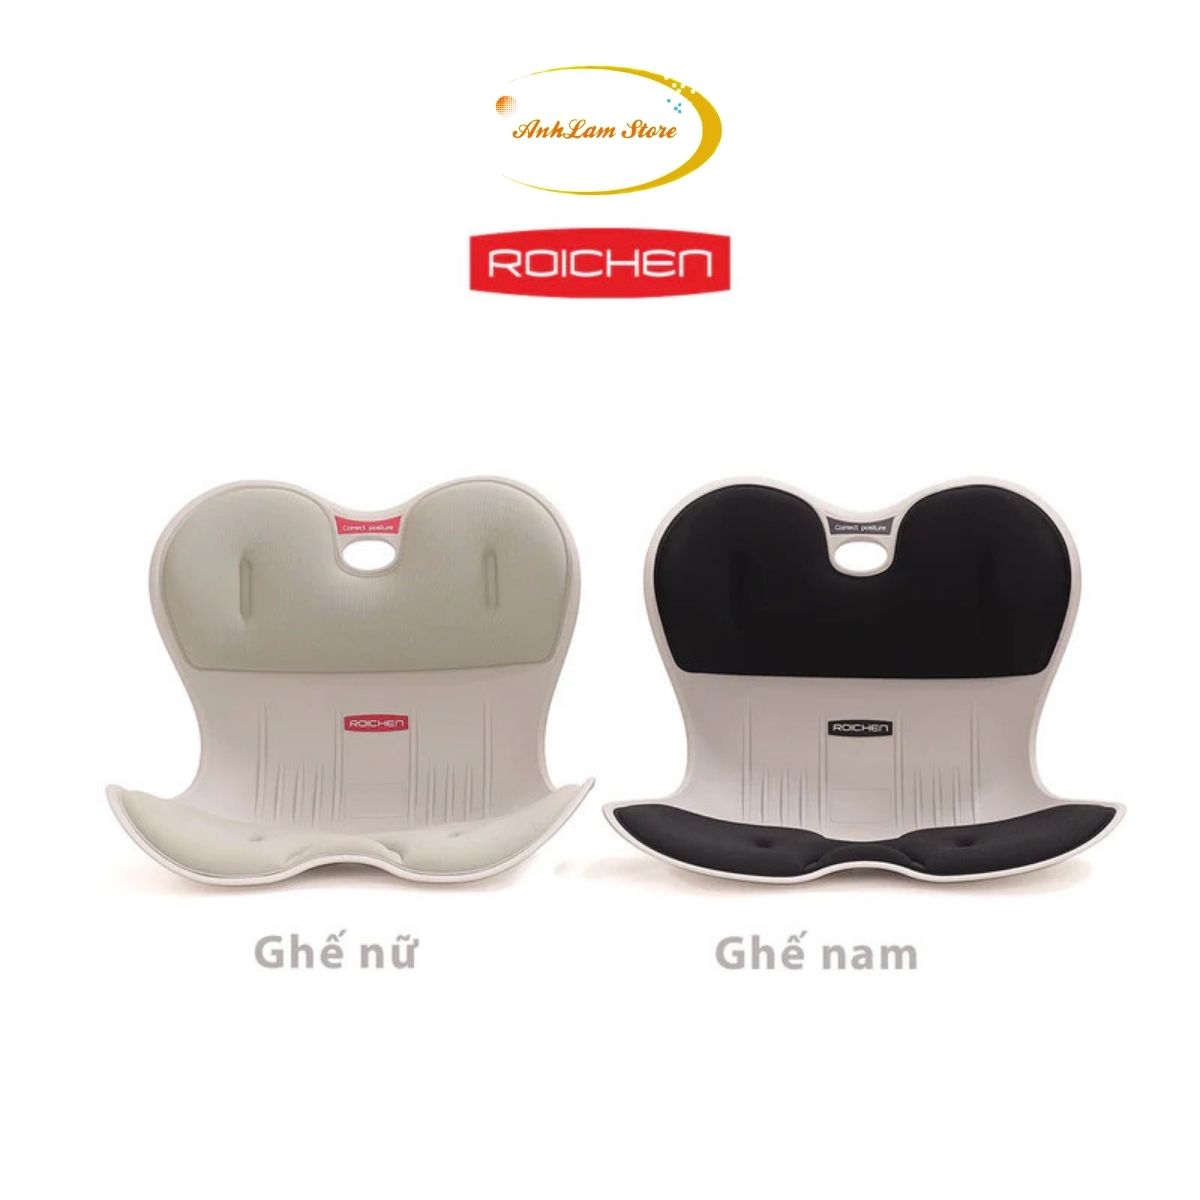 Ghế chỉnh dáng ngồi đúng cả gia đình hàng chính hãng Roichen nhập khẩu Hàn Quốc